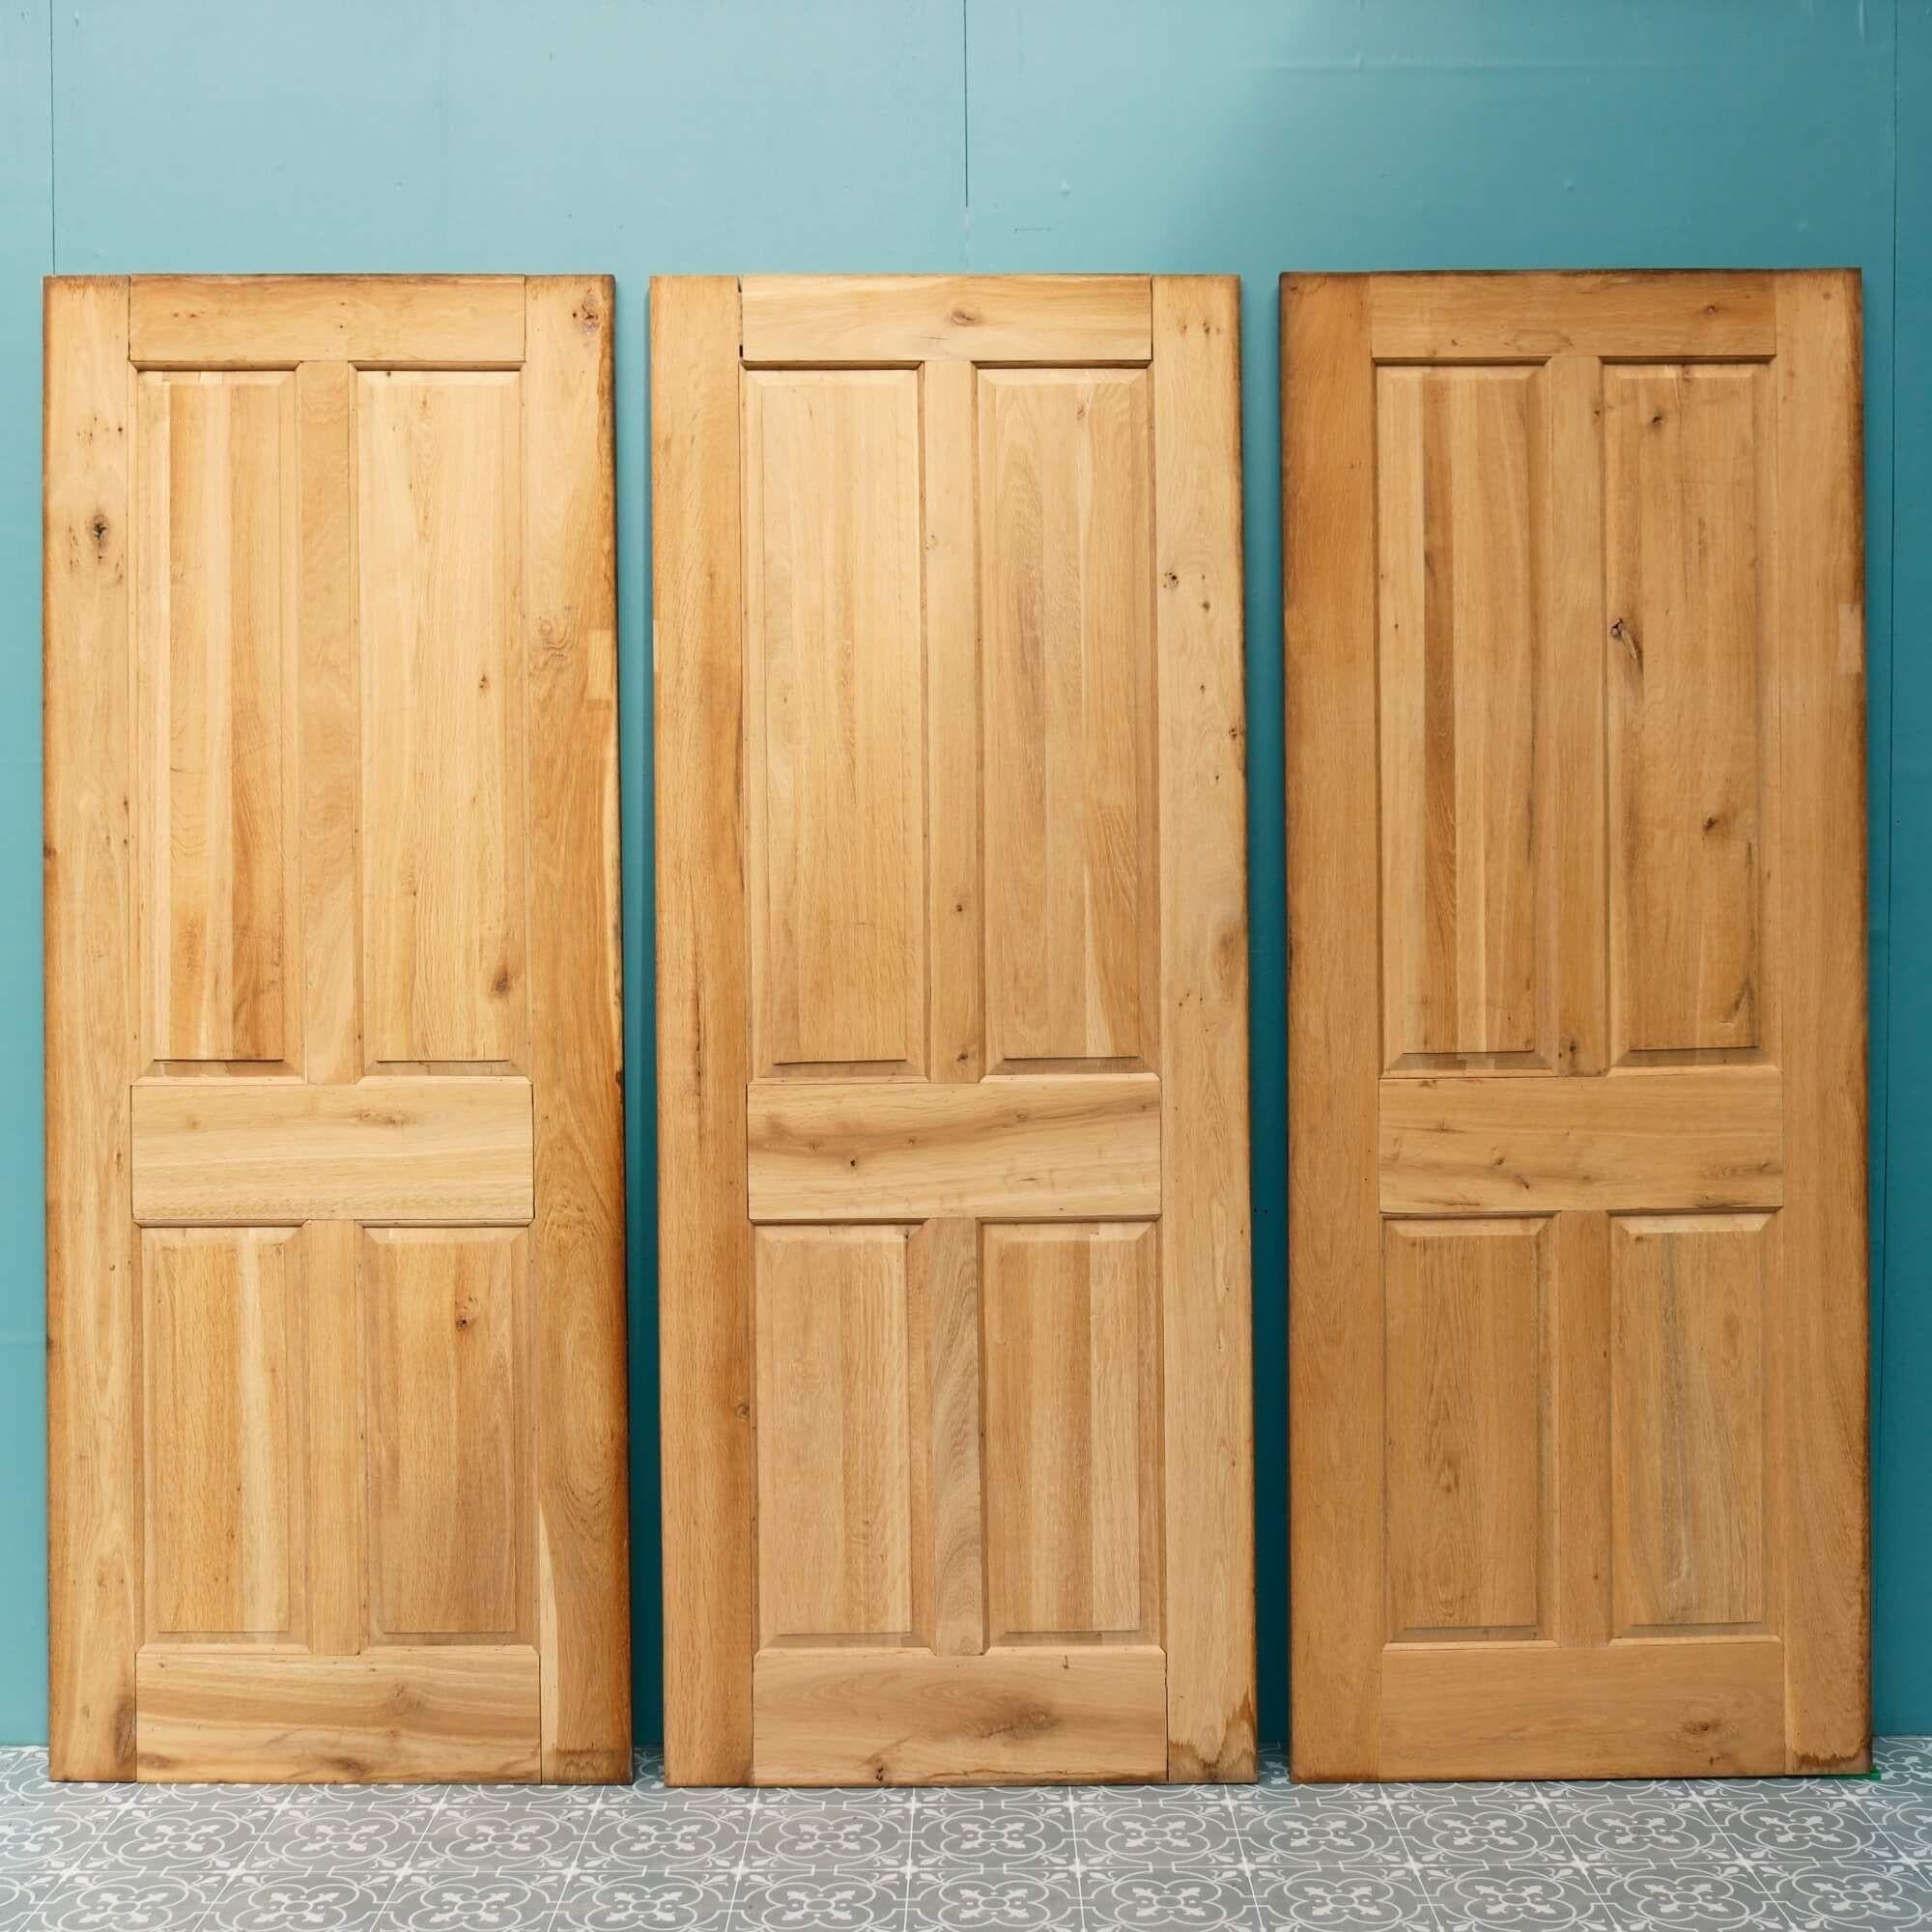 4 panel oak interior doors